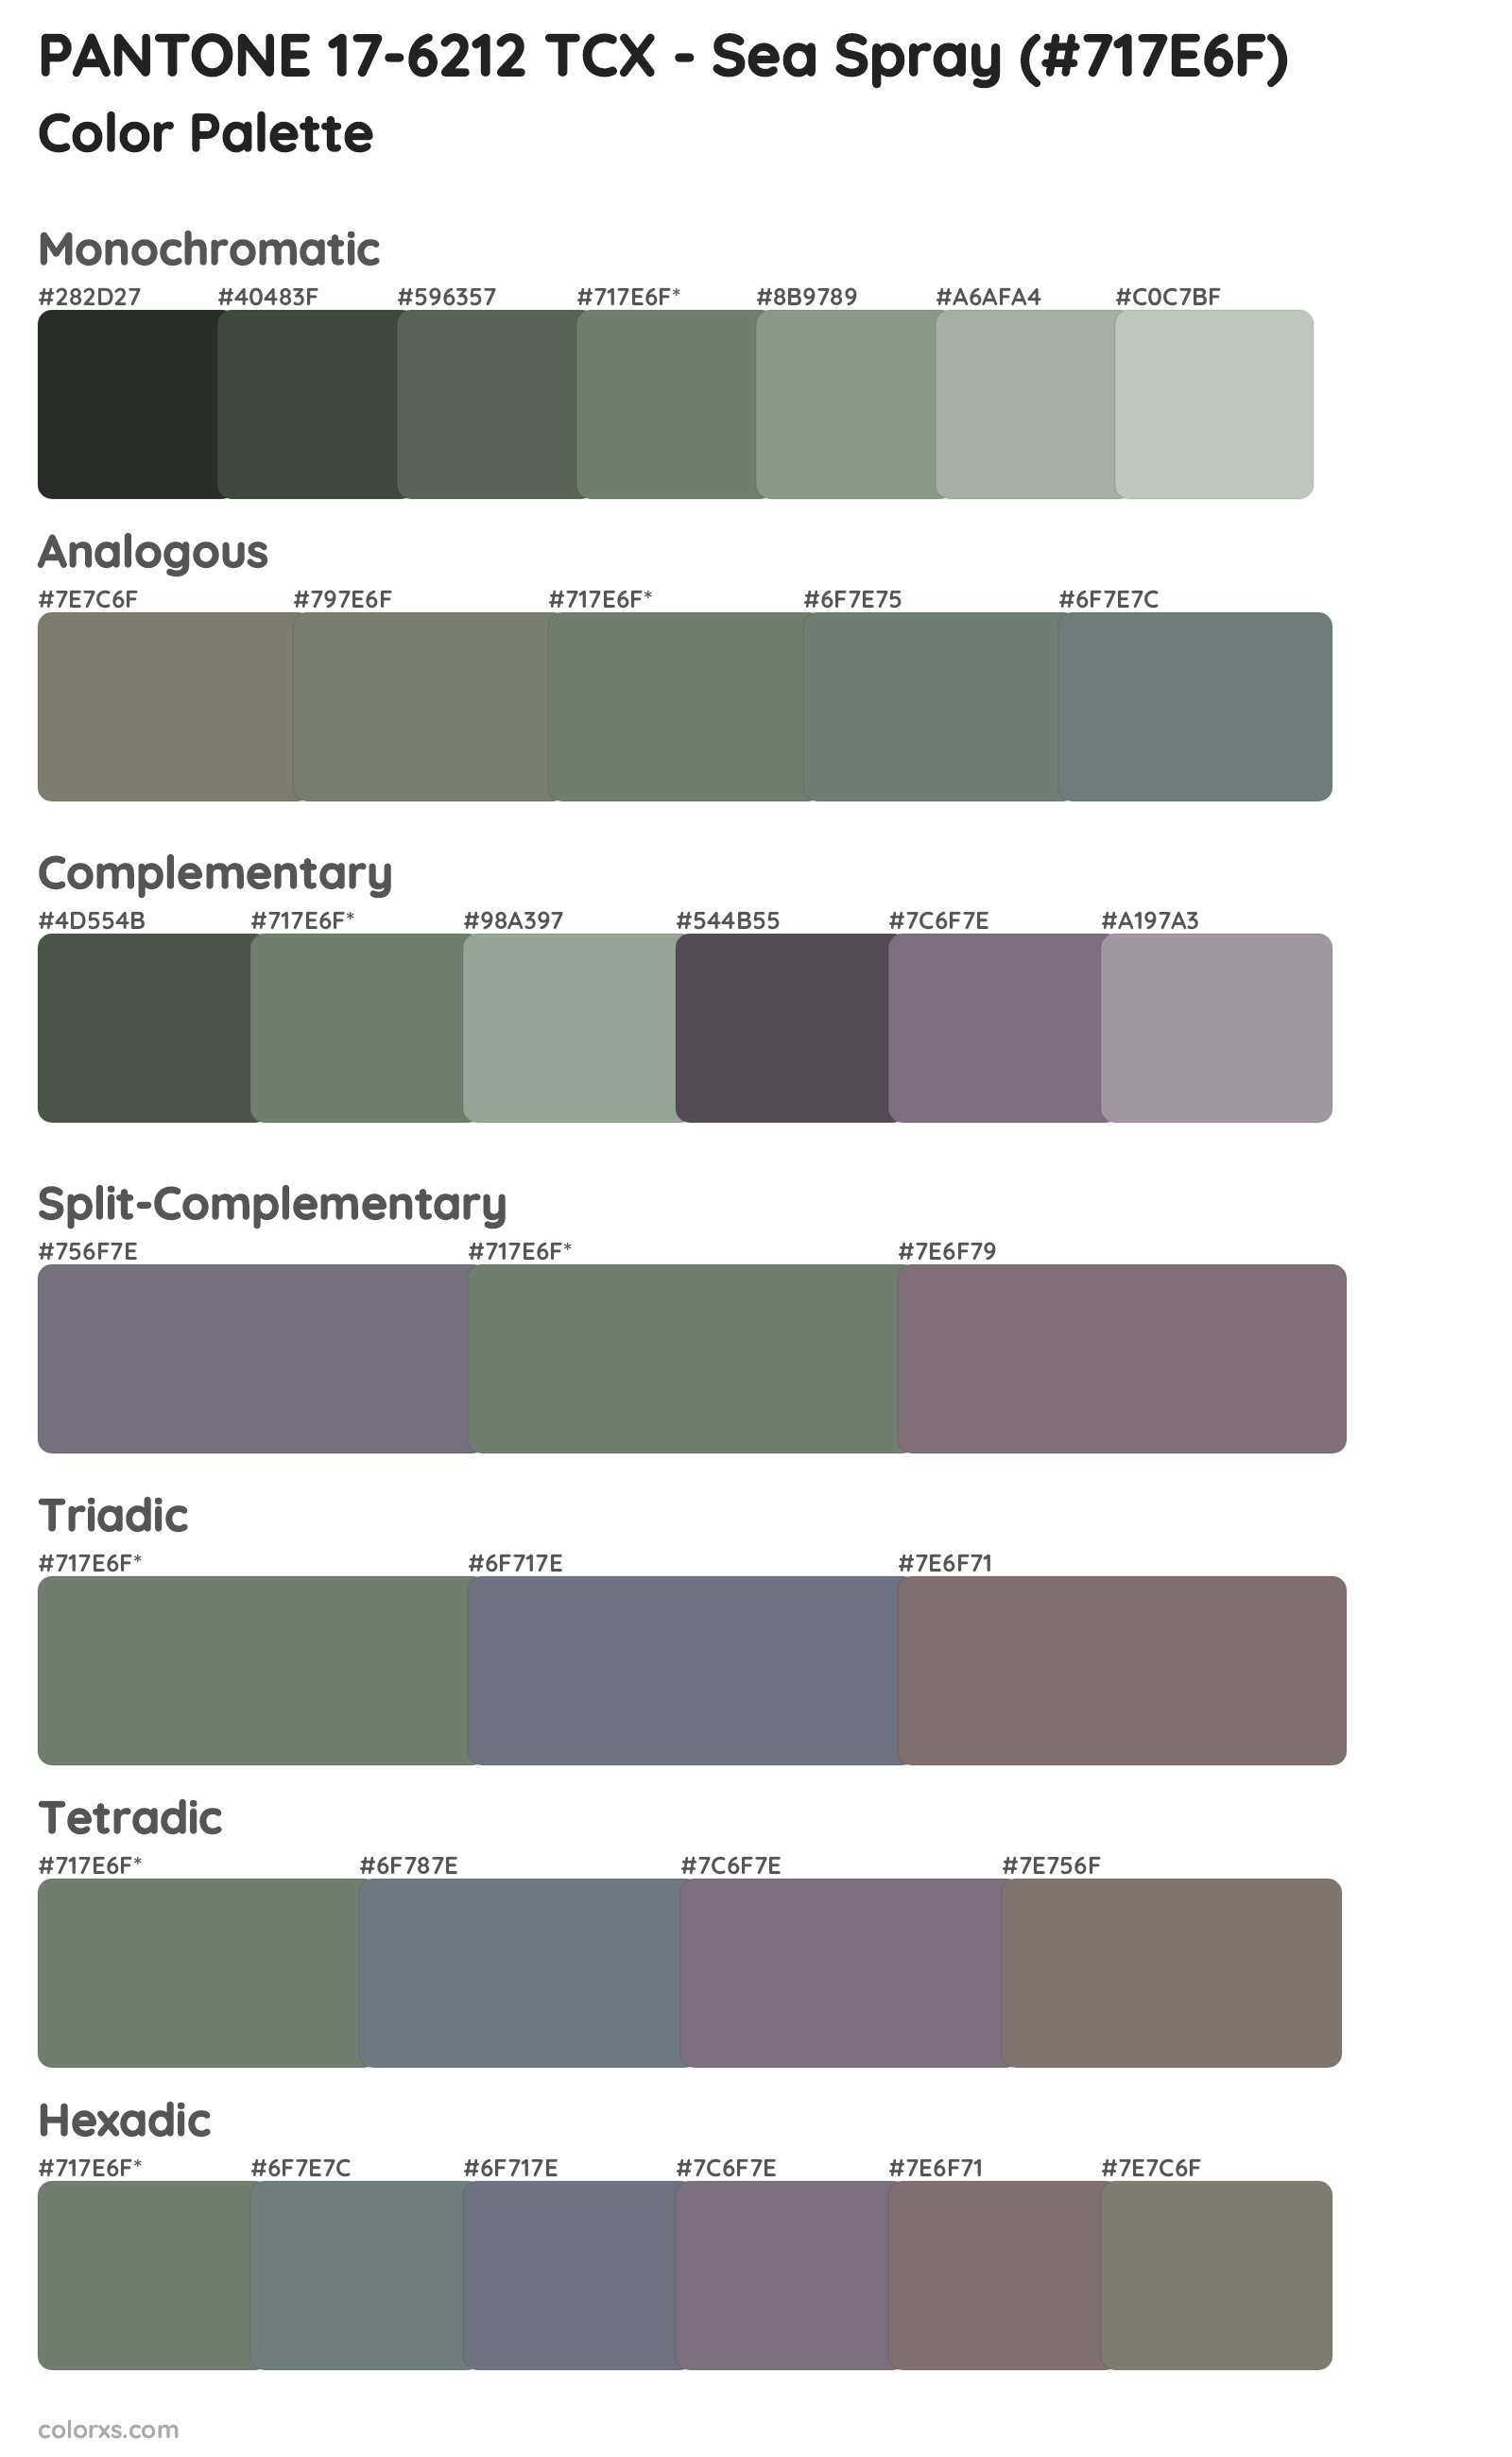 PANTONE 17-6212 TCX - Sea Spray Color Scheme Palettes